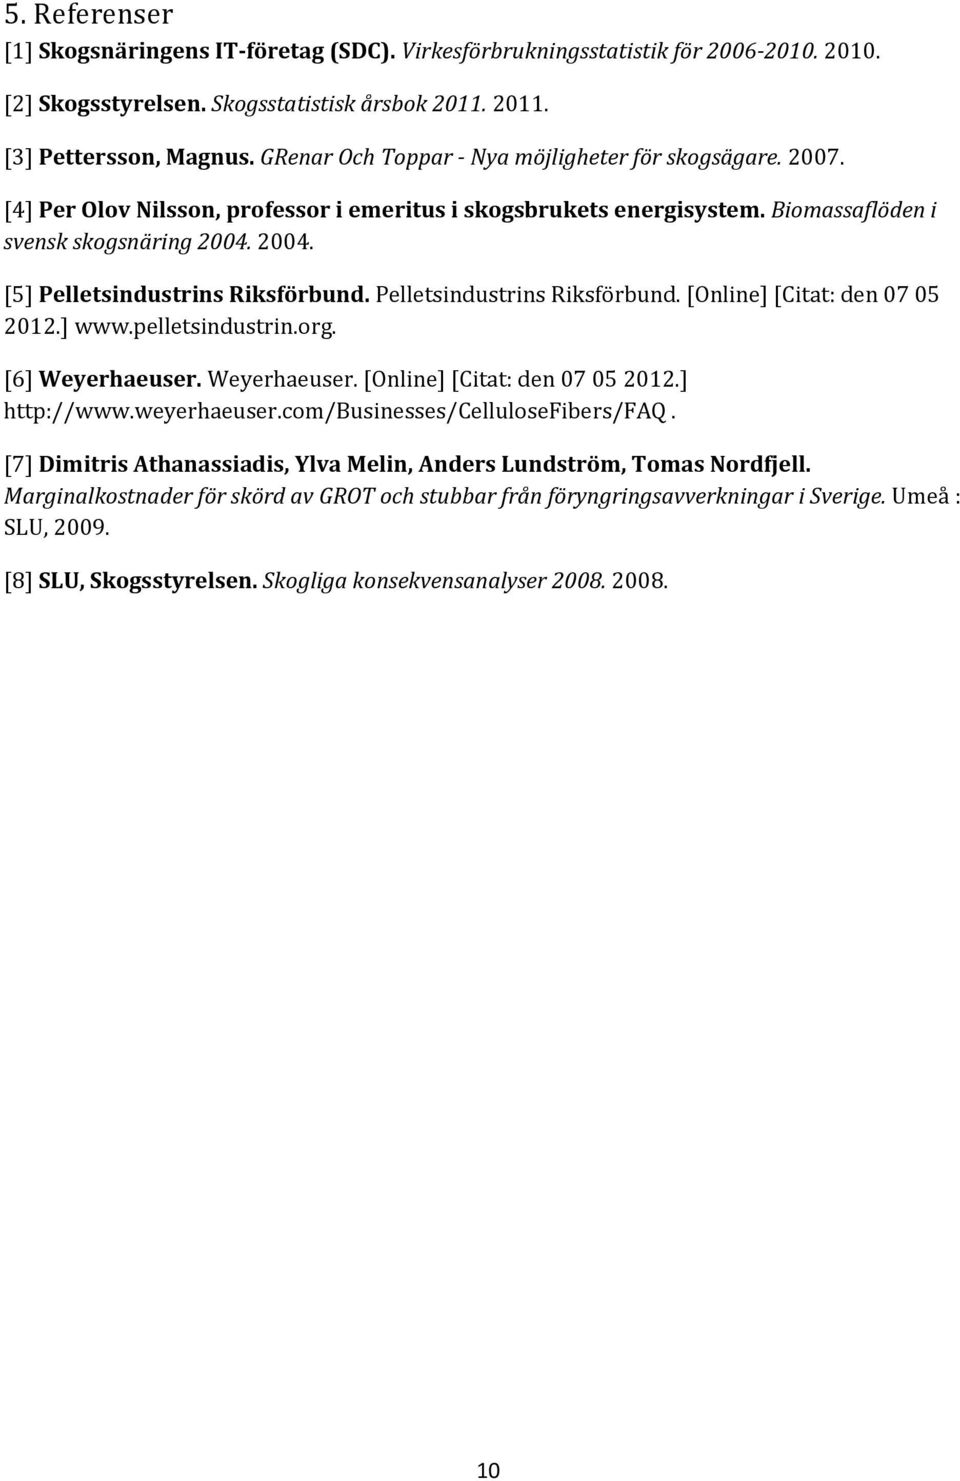 2004. [5] Pelletsindustrins Riksförbund. Pelletsindustrins Riksförbund. [Online] [Citat: den 07 05 2012.] www.pelletsindustrin.org. [6] Weyerhaeuser. Weyerhaeuser. [Online] [Citat: den 07 05 2012.] http://www.